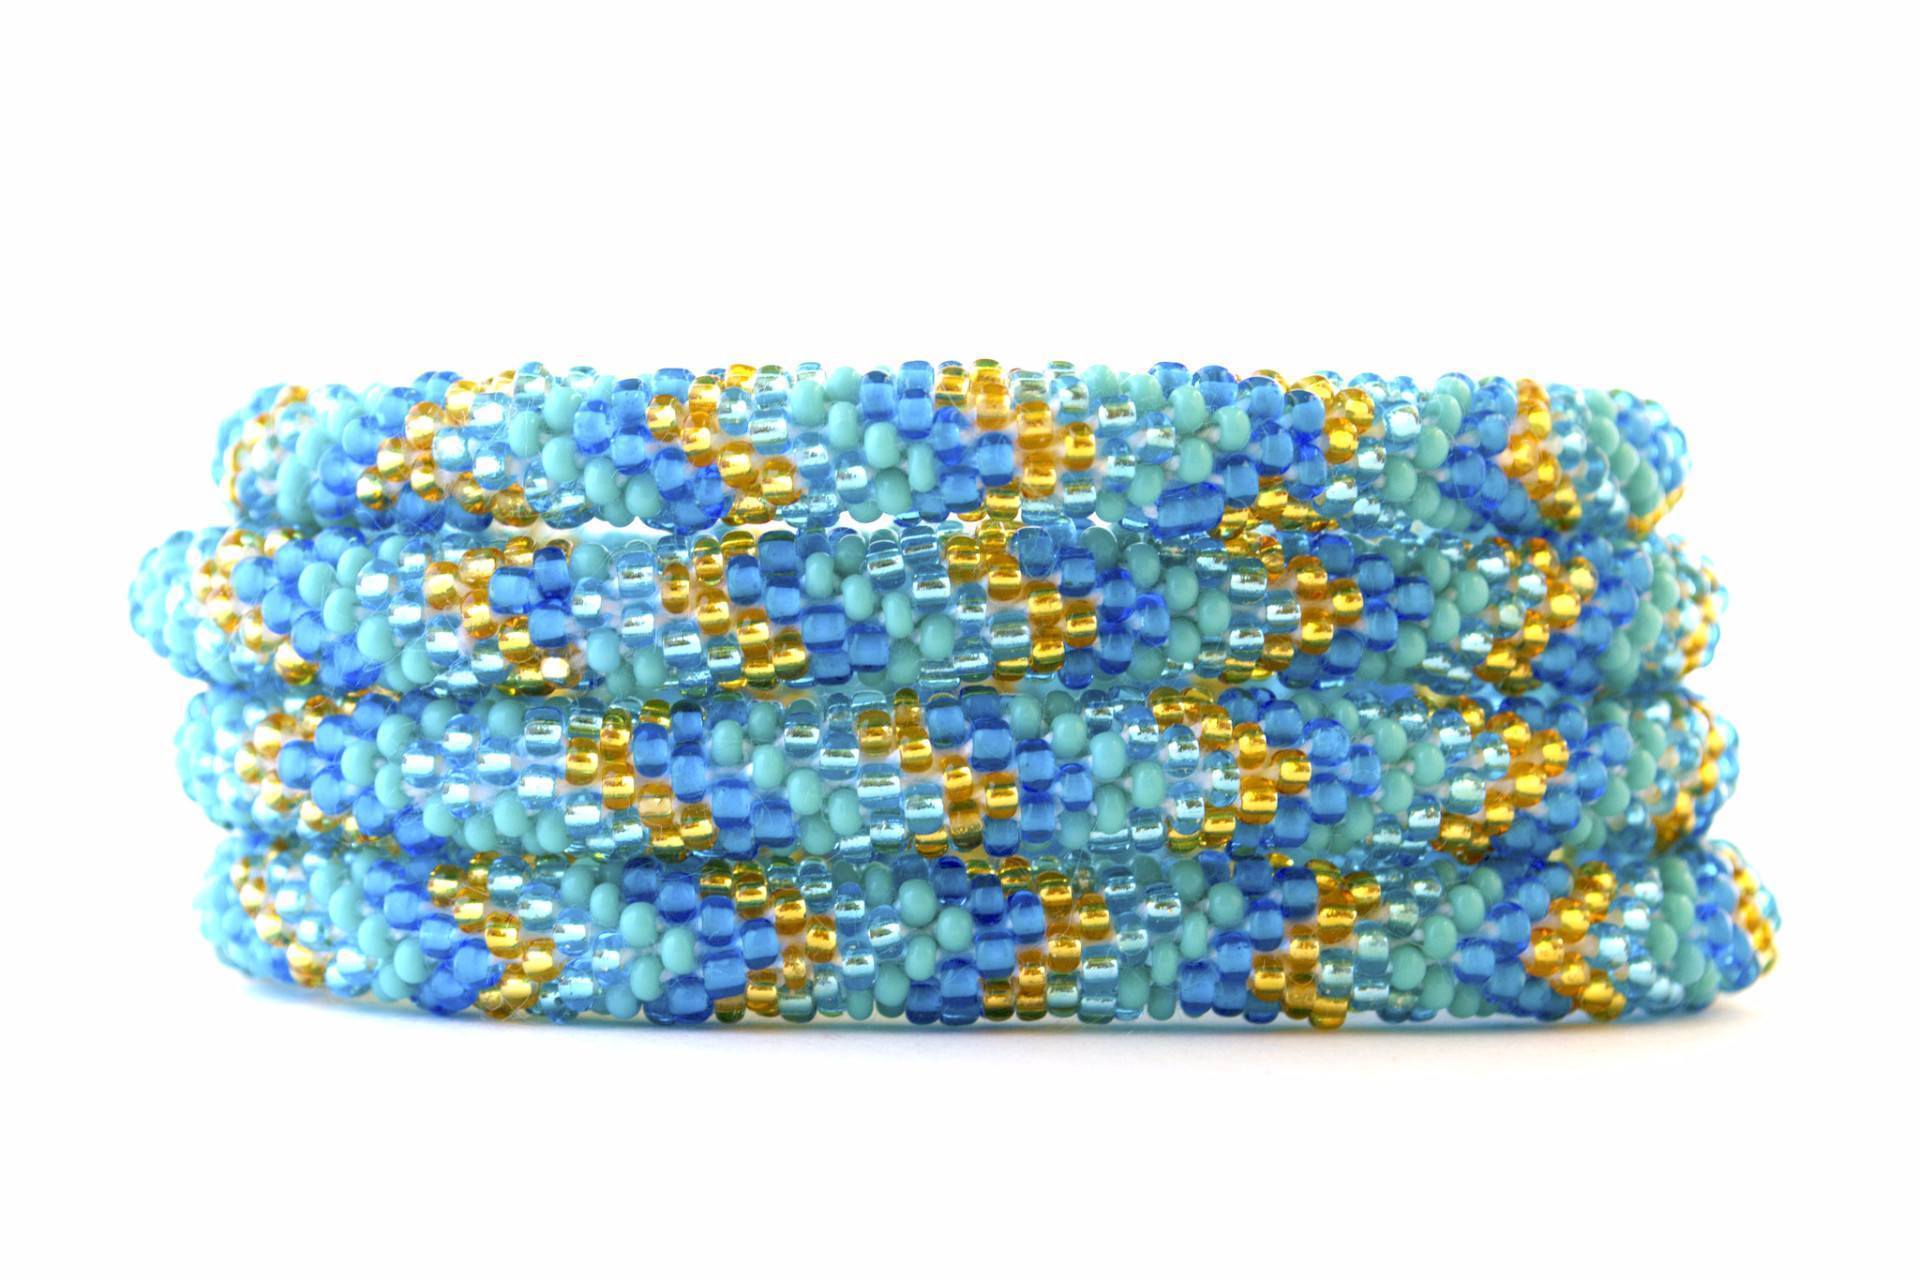 Sashka Co. Extended 8" Bracelet Turquoise / Blue / Gold Bethany Beach Bracelet - Extended 8"